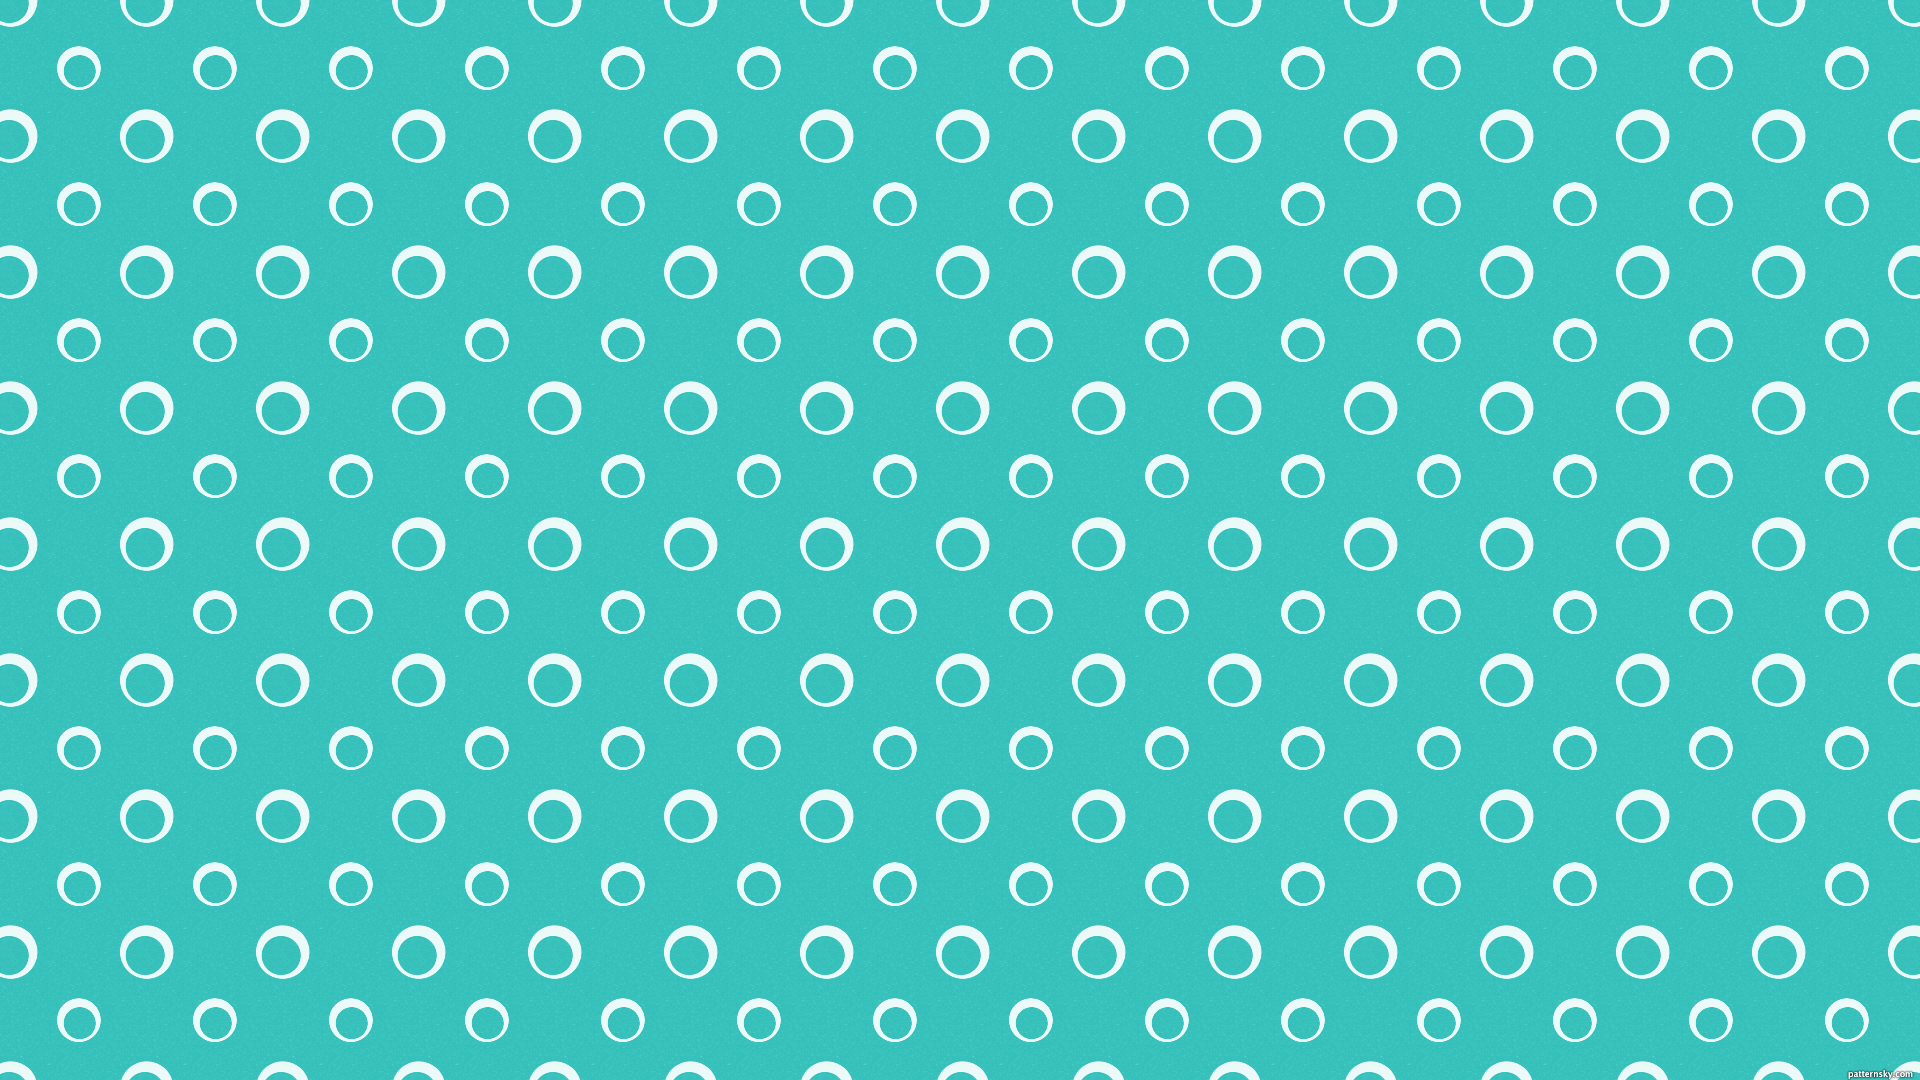 Turquoise Tumblr Wallpaper Desktop - Uncalke.com